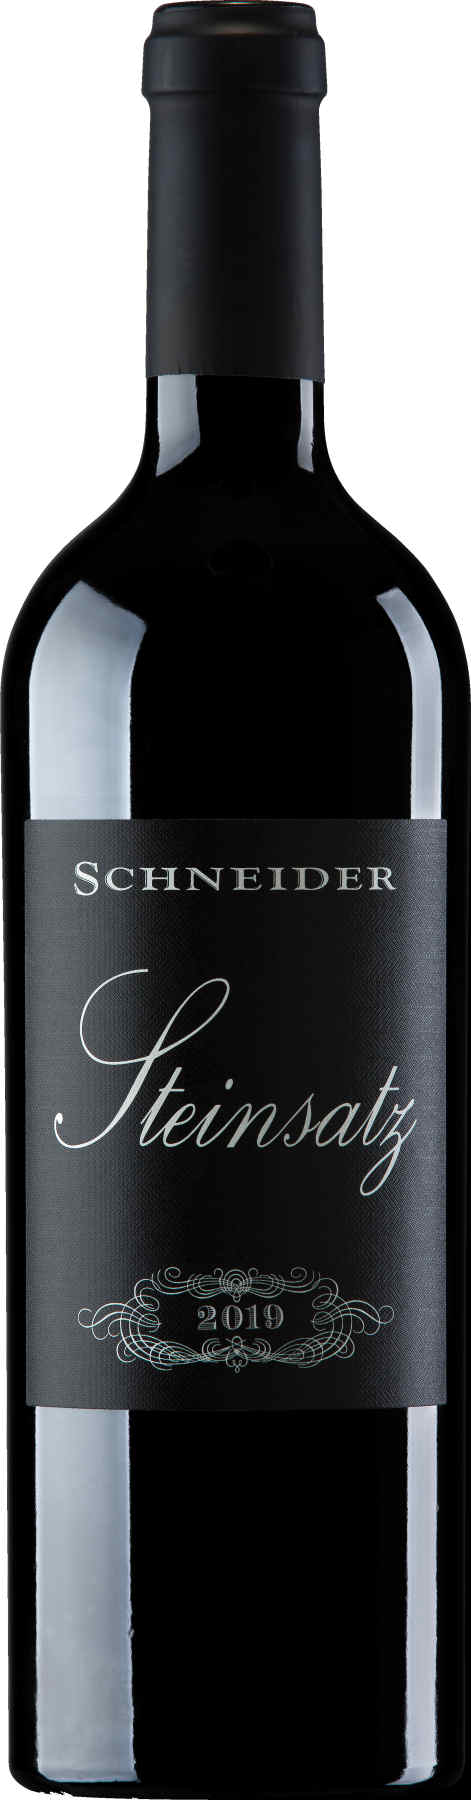 Markus Schneider Steinsatz Rotwein